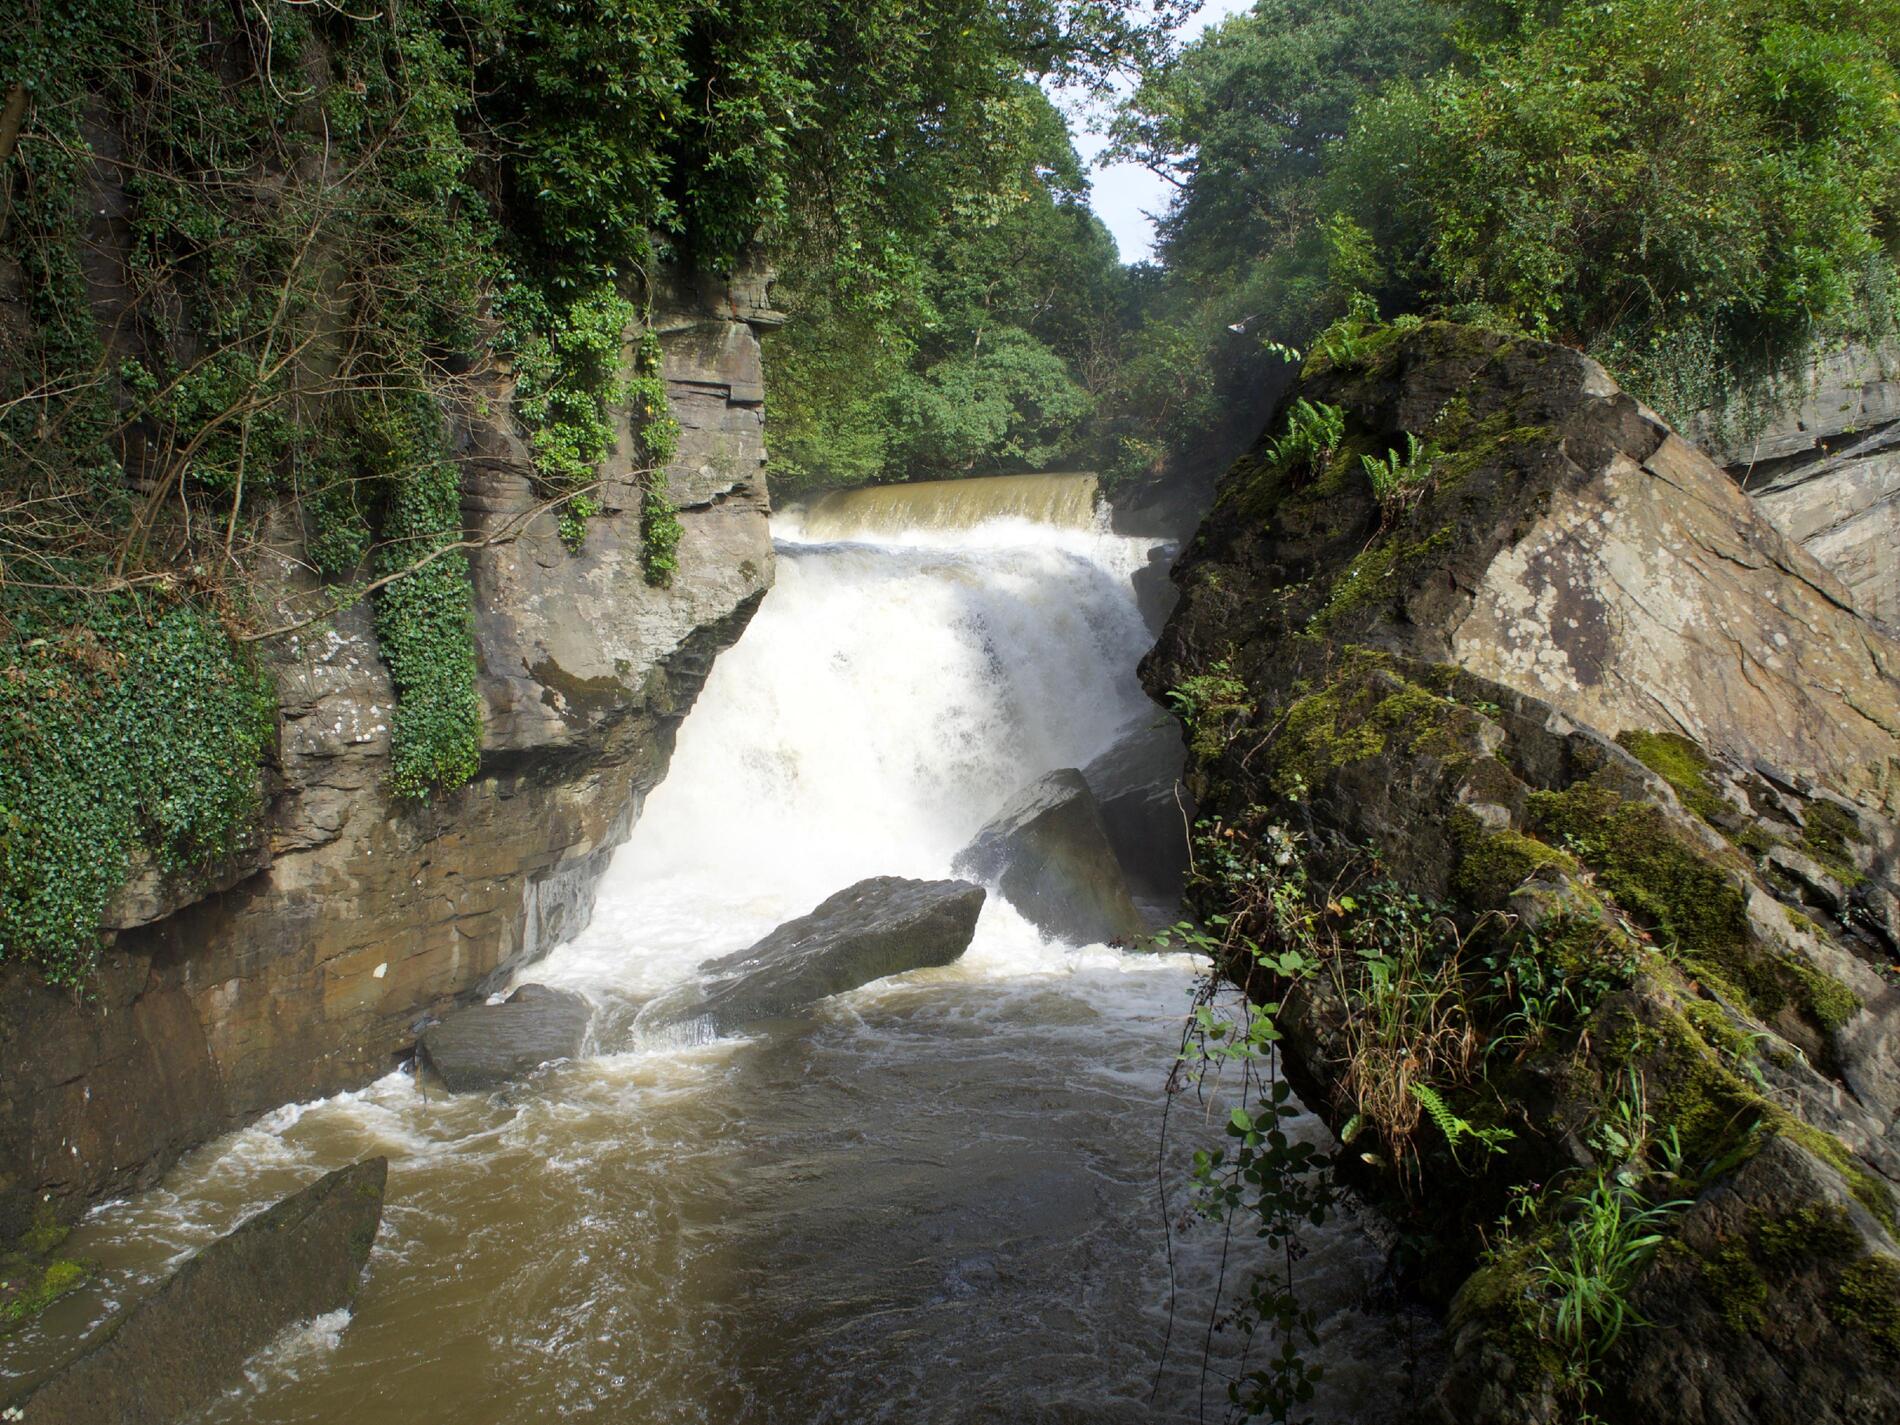 A waterfall visible between rocks.